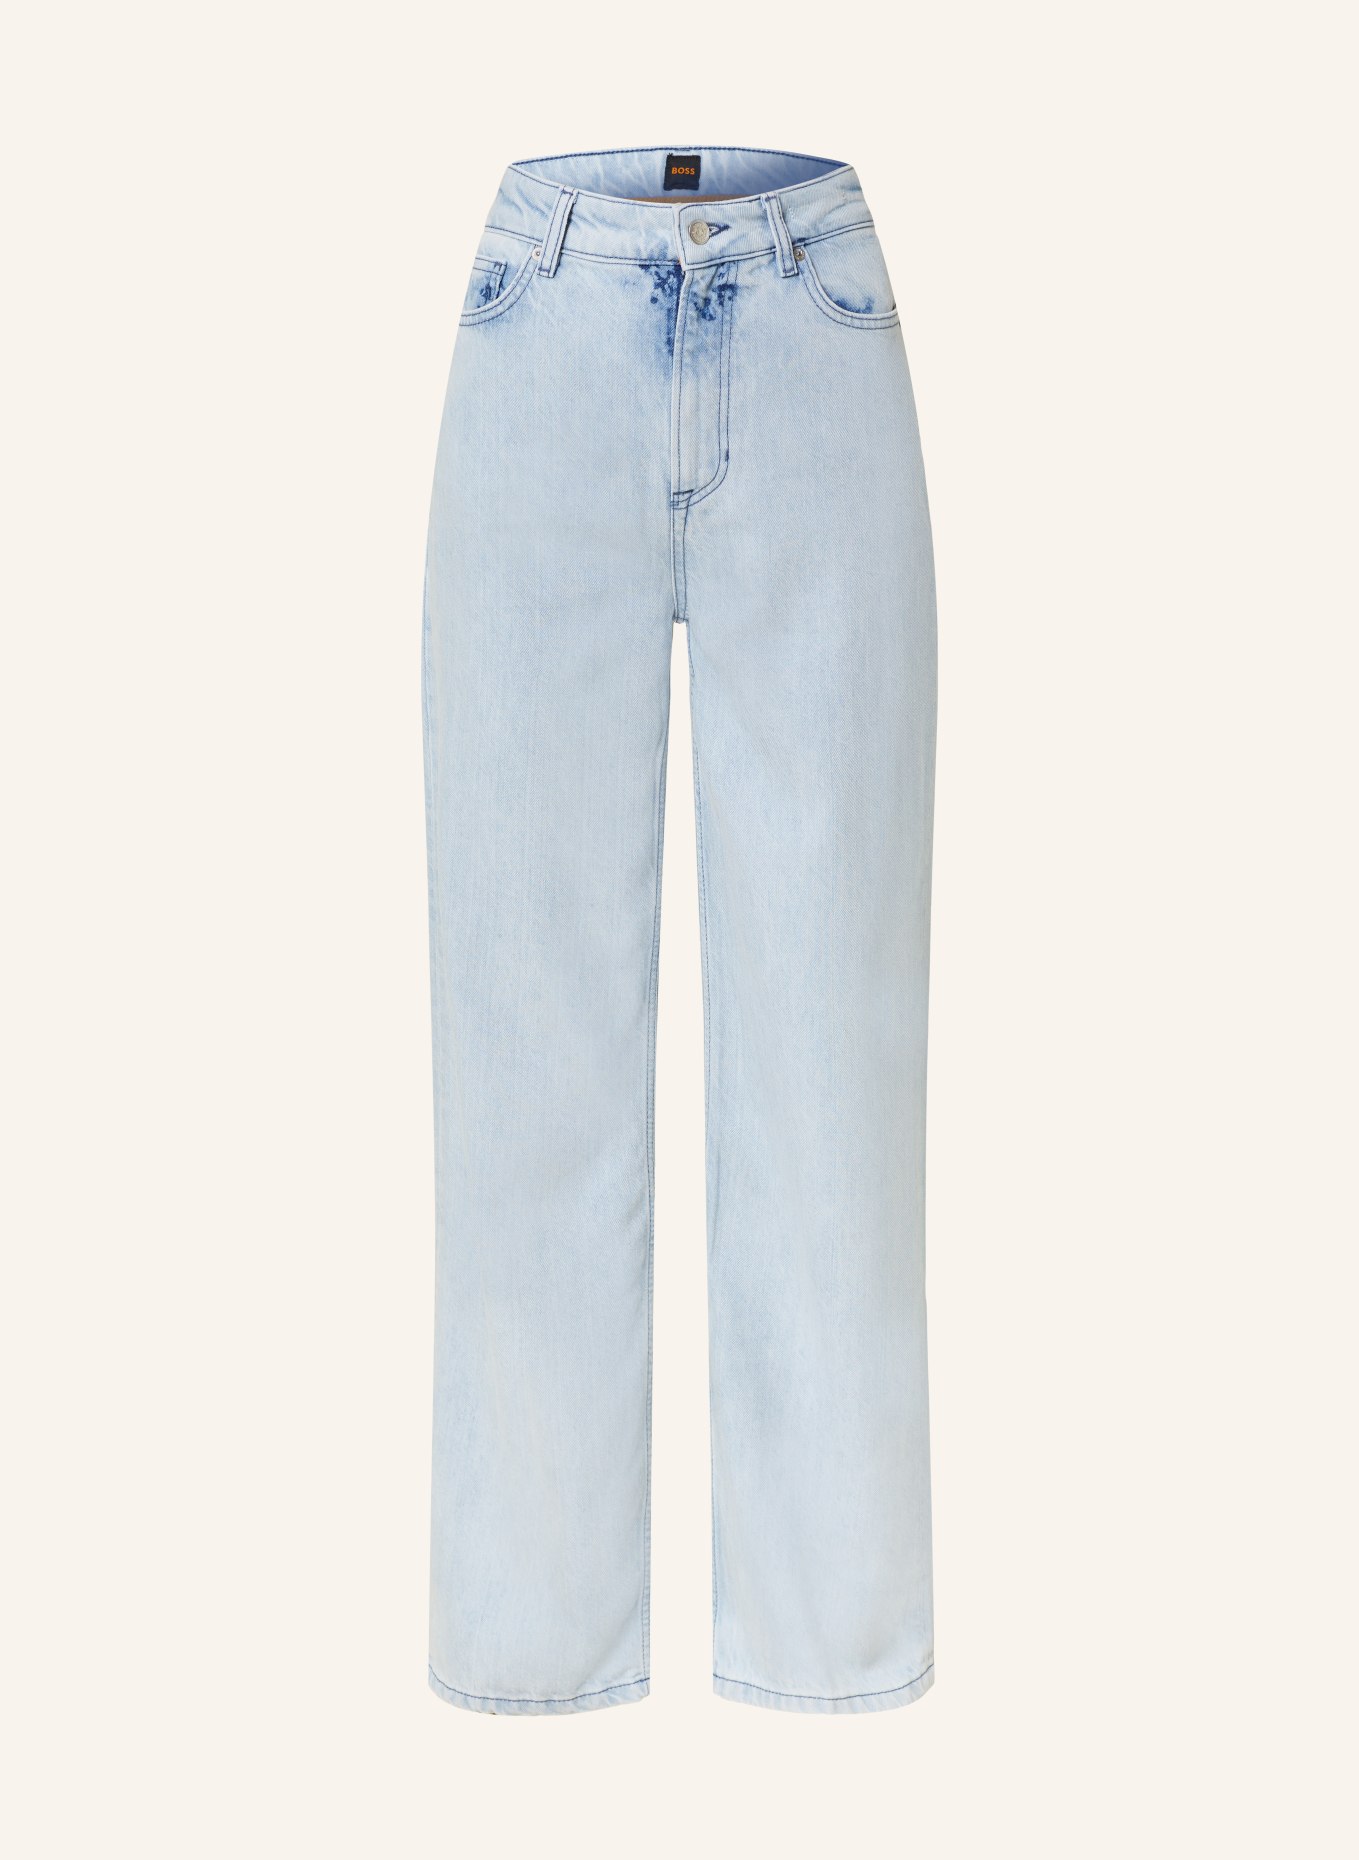 BOSS Flared Jeans MARLENE, Farbe: 454 LIGHT/PASTEL BLUE (Bild 1)